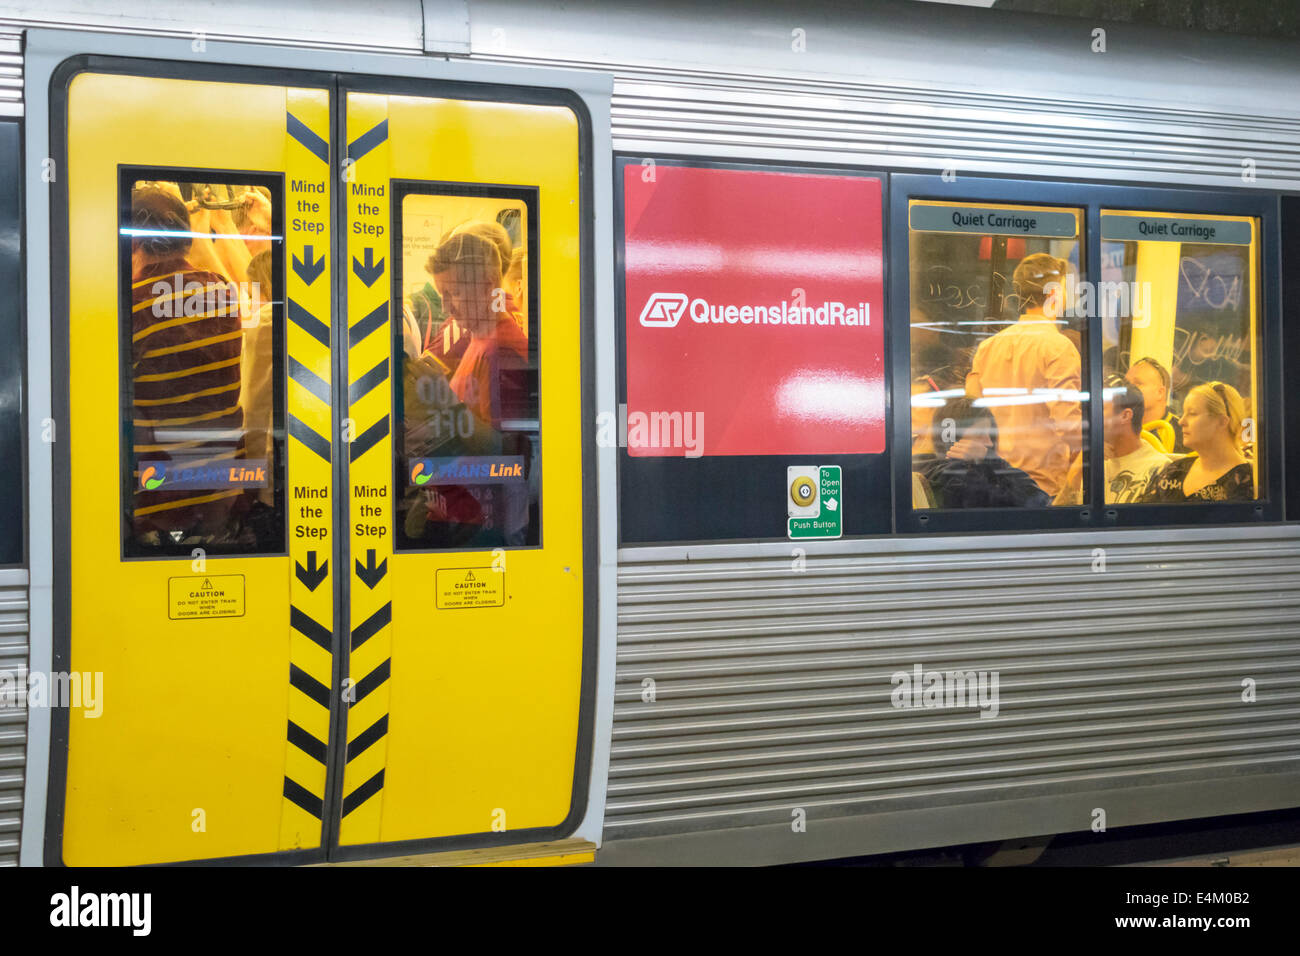 Brisbane Australien, Hauptbahnhof, öffentlicher Nahverkehr Bahnhof, Bahn, Zug, Fahrer, Pendler, Passagiere Passagiere Fahrer, Passagierkabine Stockfoto